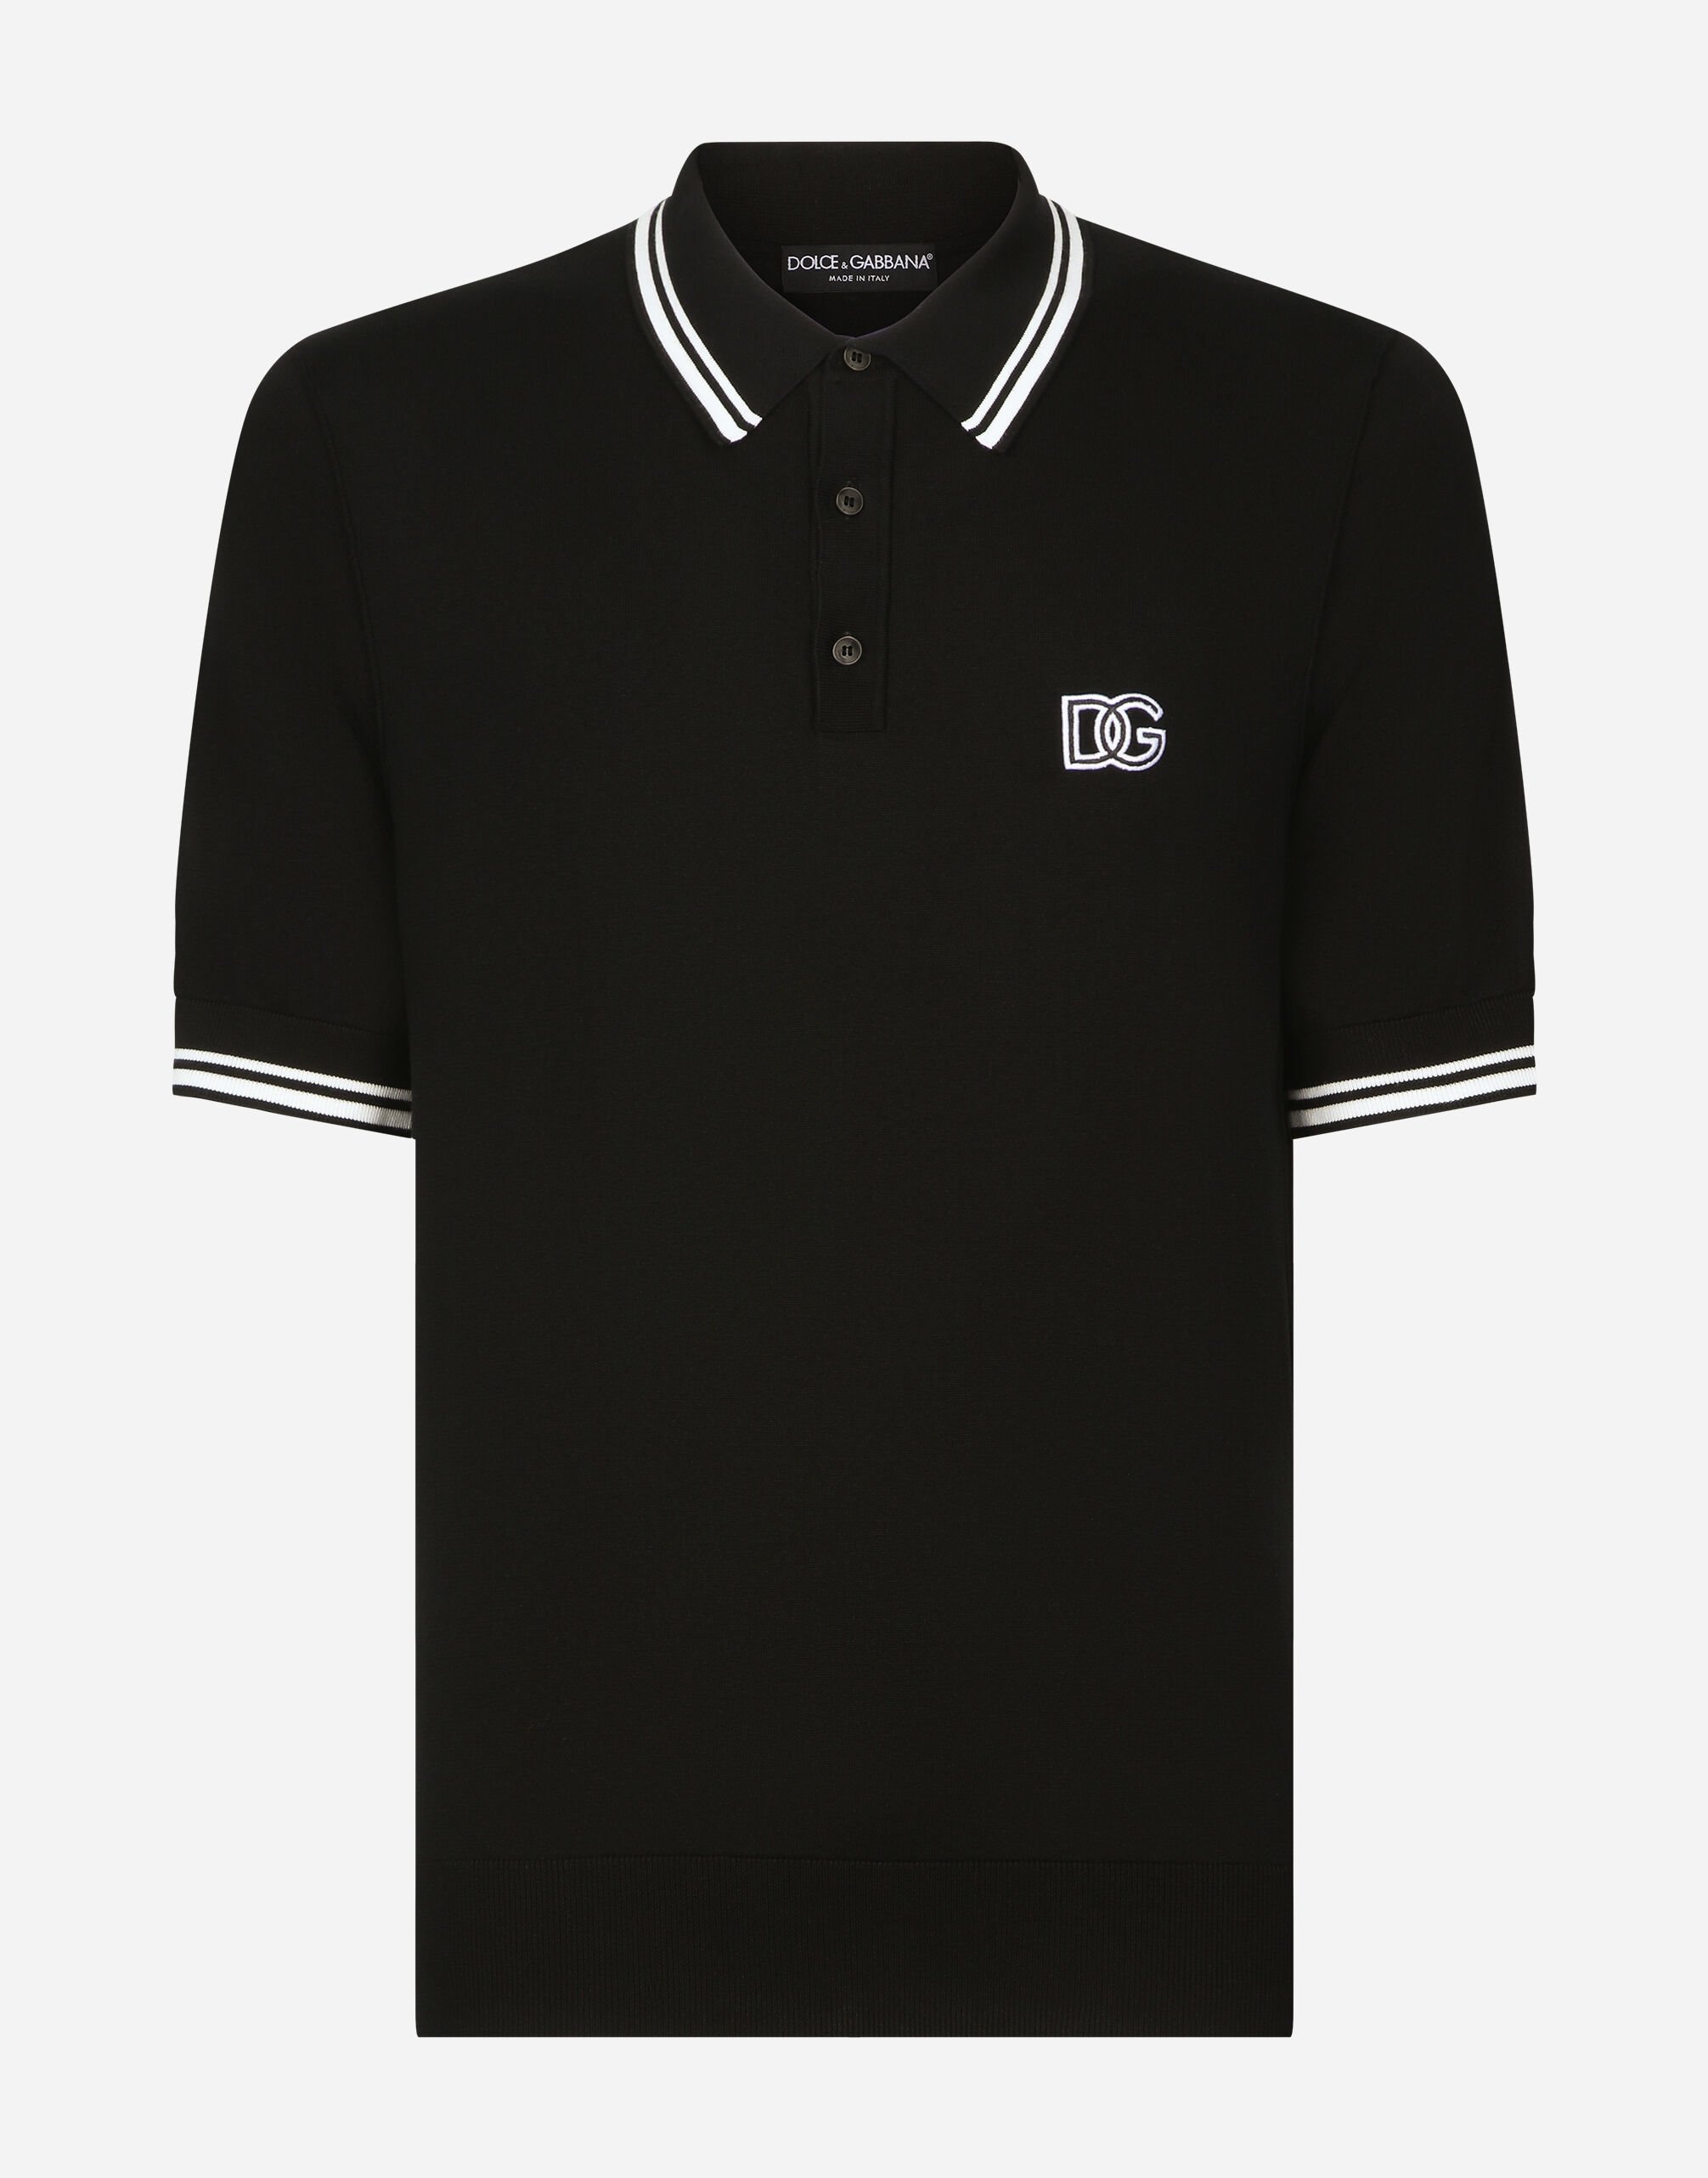 ブラックのメンズ Short-sleeved polo-shirt with DG logo embroidery ...